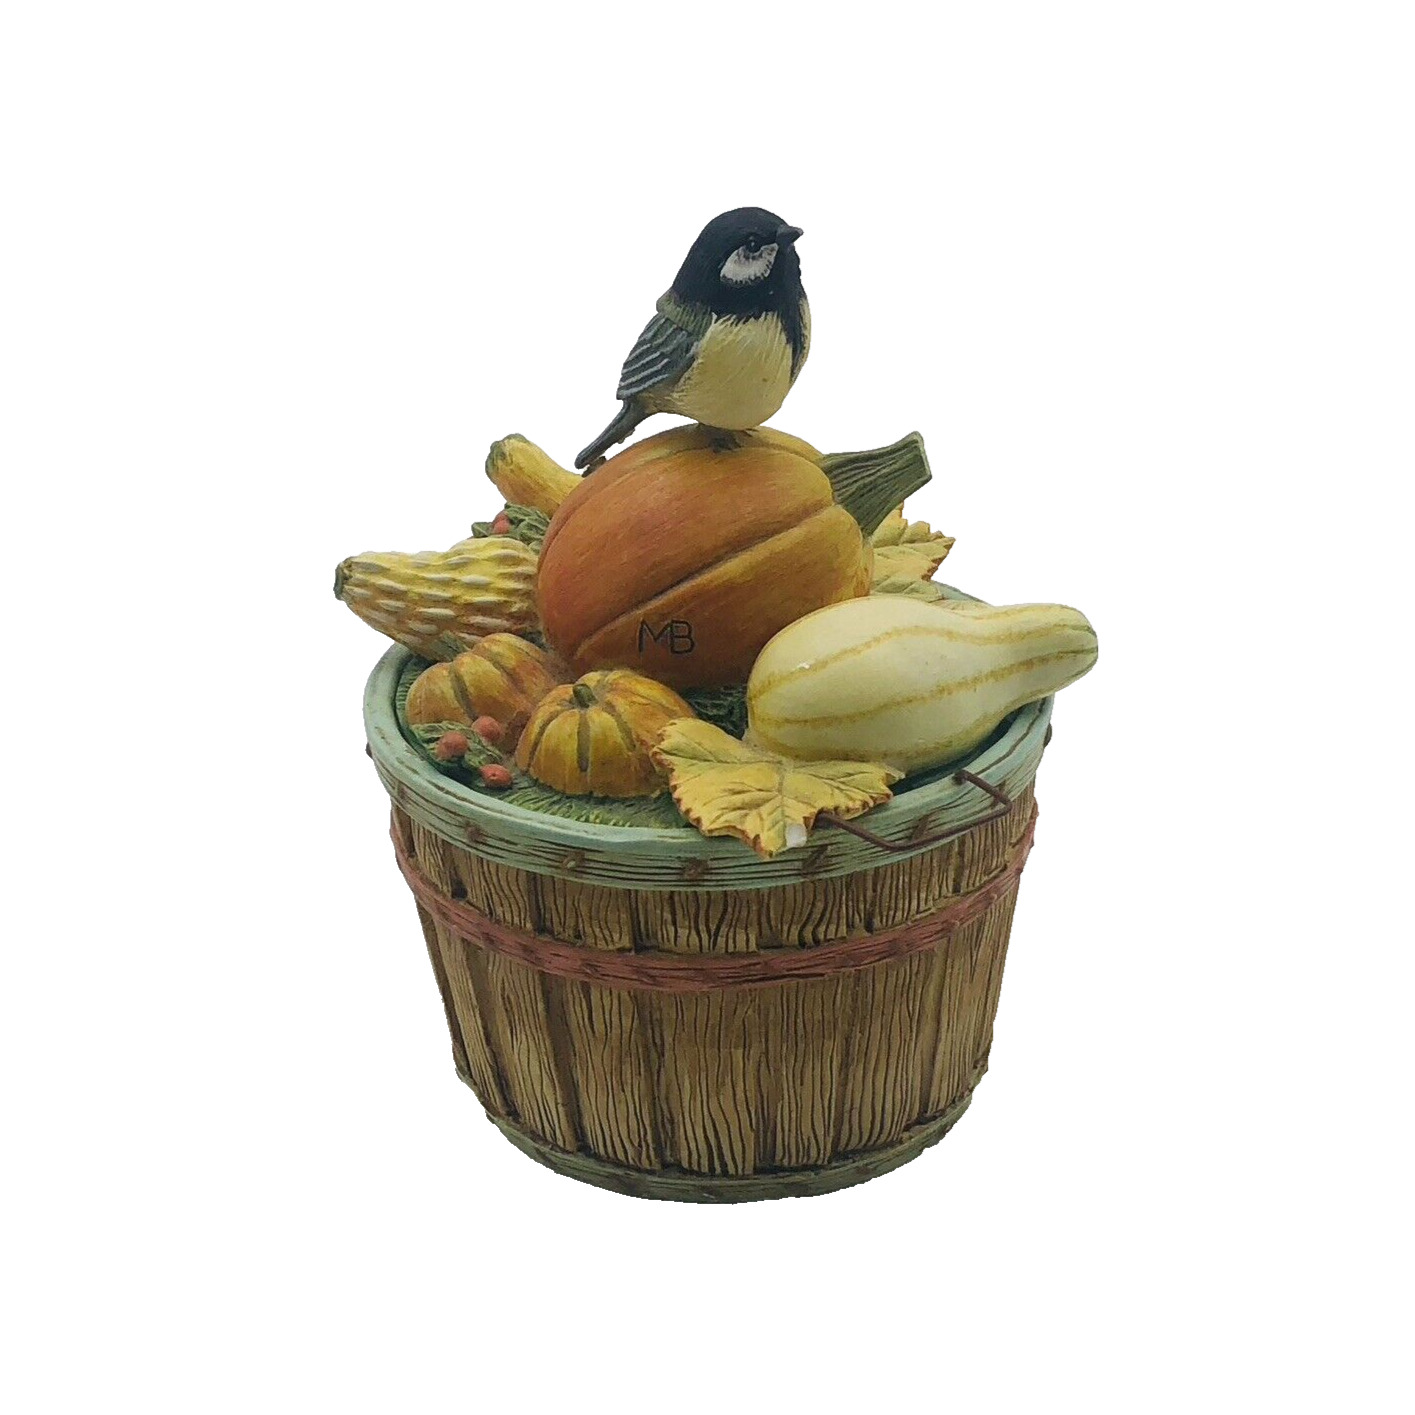 Rare Vintage Hallmark Marjalein  Bast Fall Gourd & Bird Trinket Box